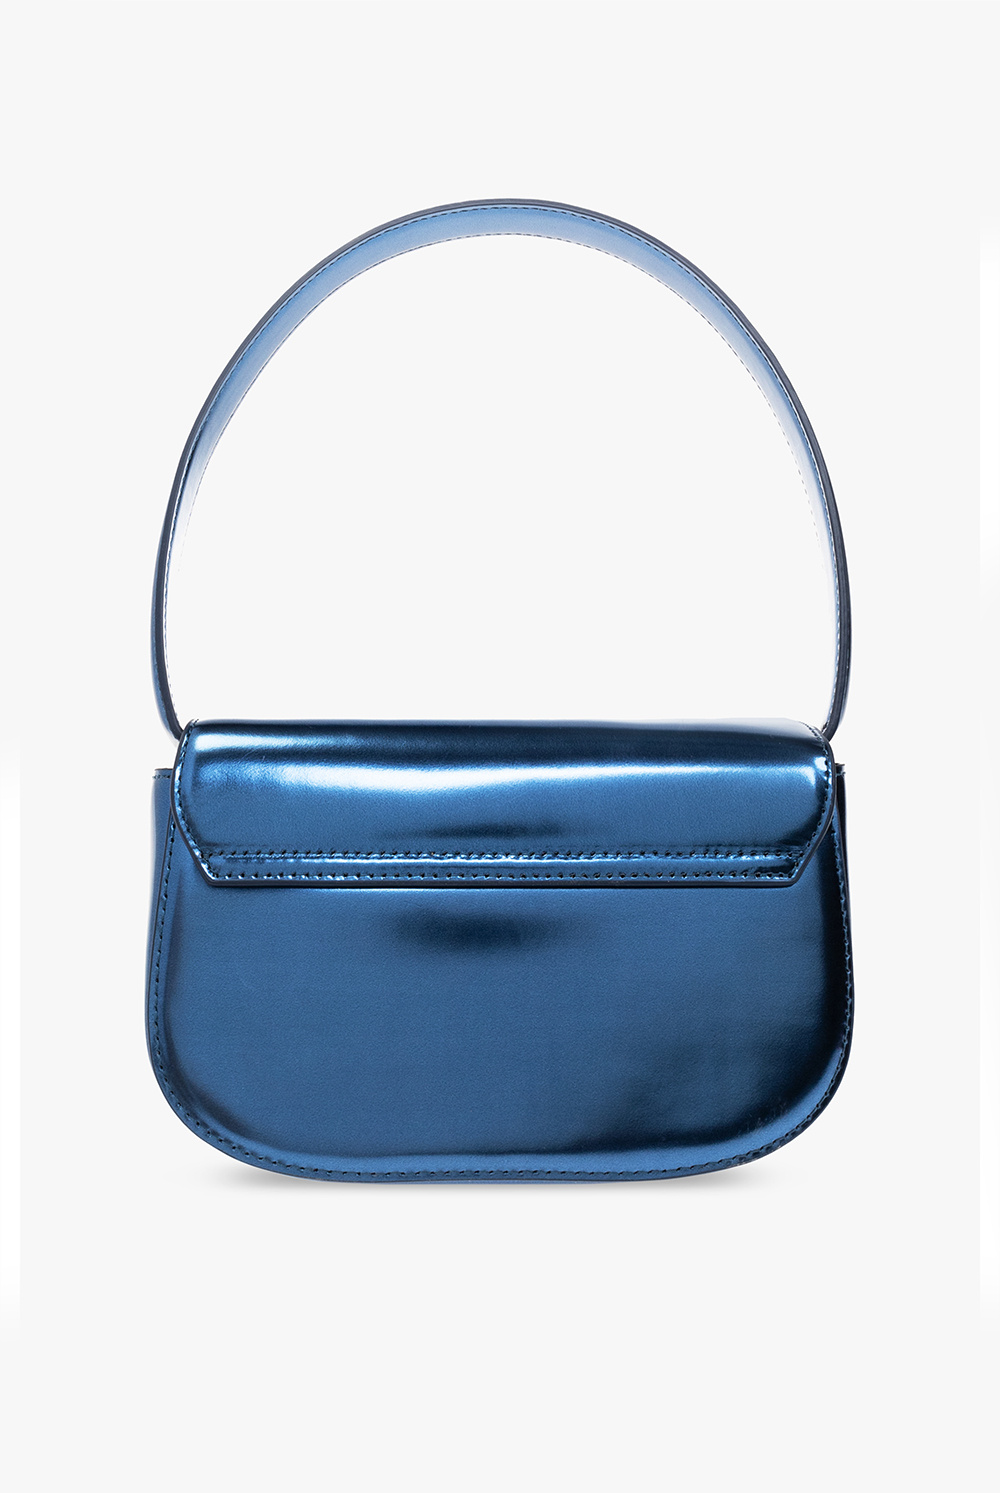 De-iceShops Blue '1tubici crystal - fringe tote bag Diesel - inneraum bags 2018 buy